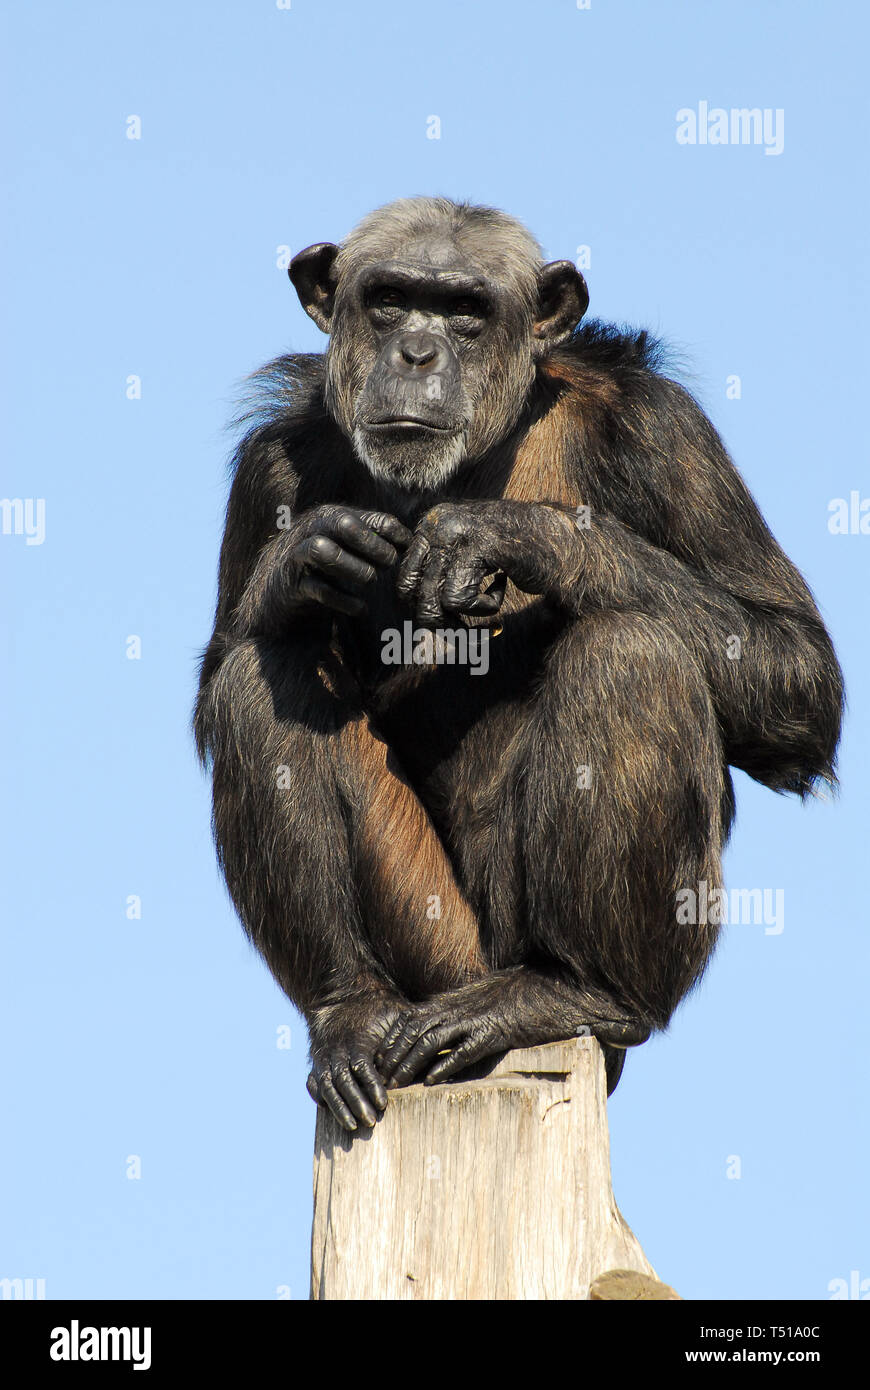 chimpanzee, Schimpanse, Pan troglodytes, csimpánz Stock Photo